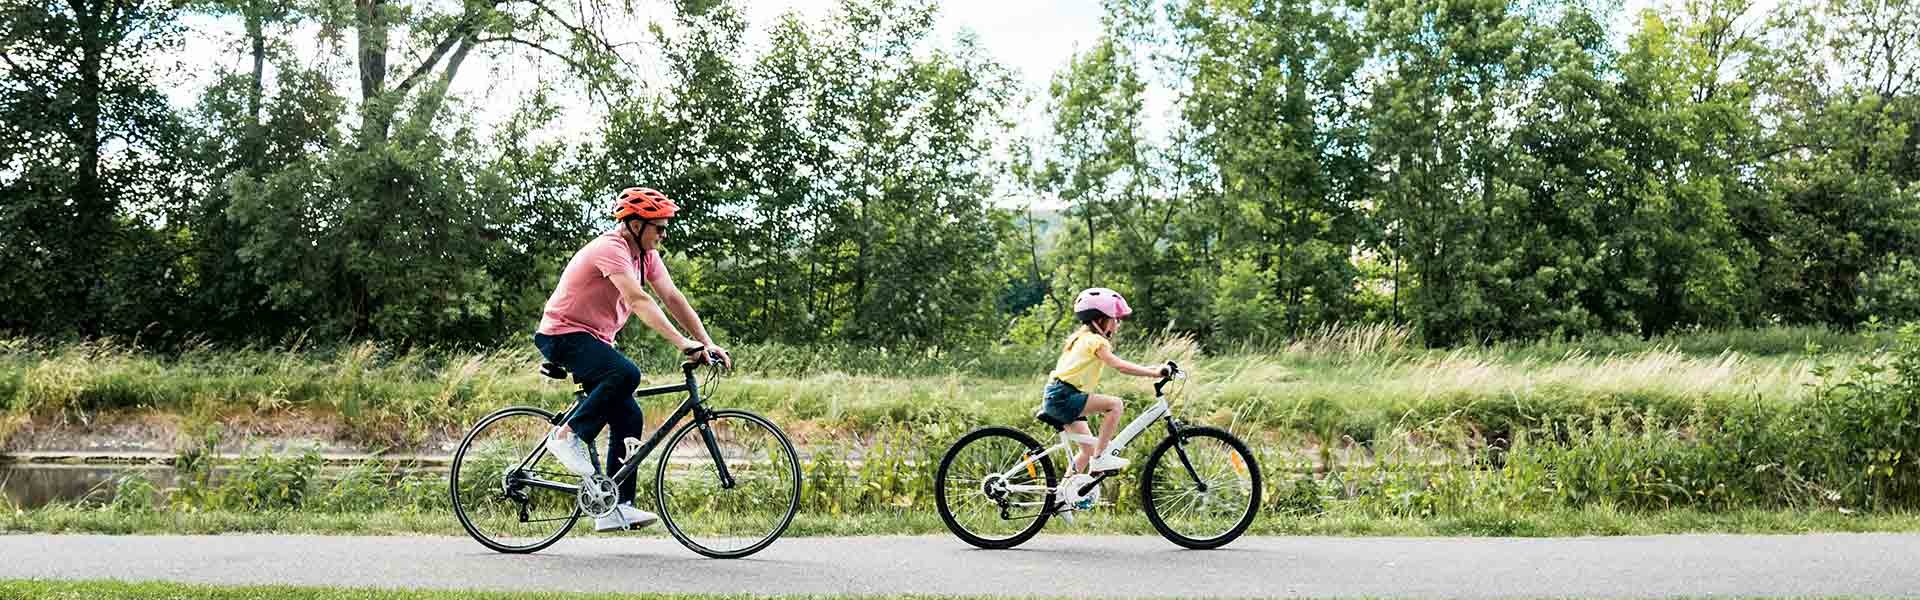 Un enfant et un adulte font du vélo sur une piste cyclable qui borde la nature